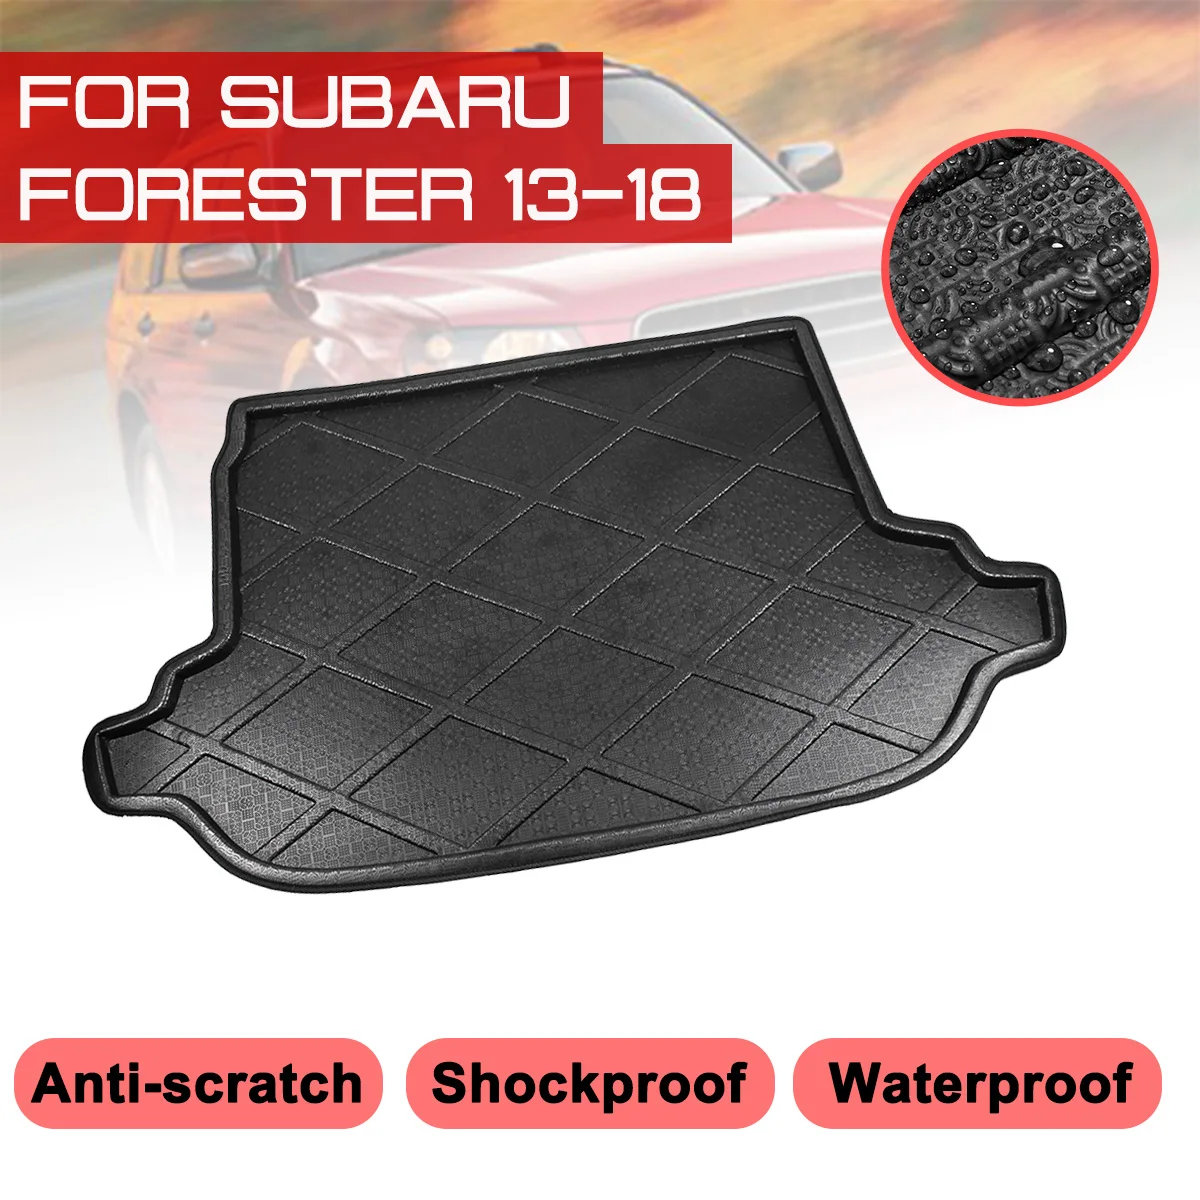 

Коврик автомобильный, напольный коврик для Subaru Forester 2013, 2014, 2015, 2016, 2017, 2018, задний багажник, грязевая крышка